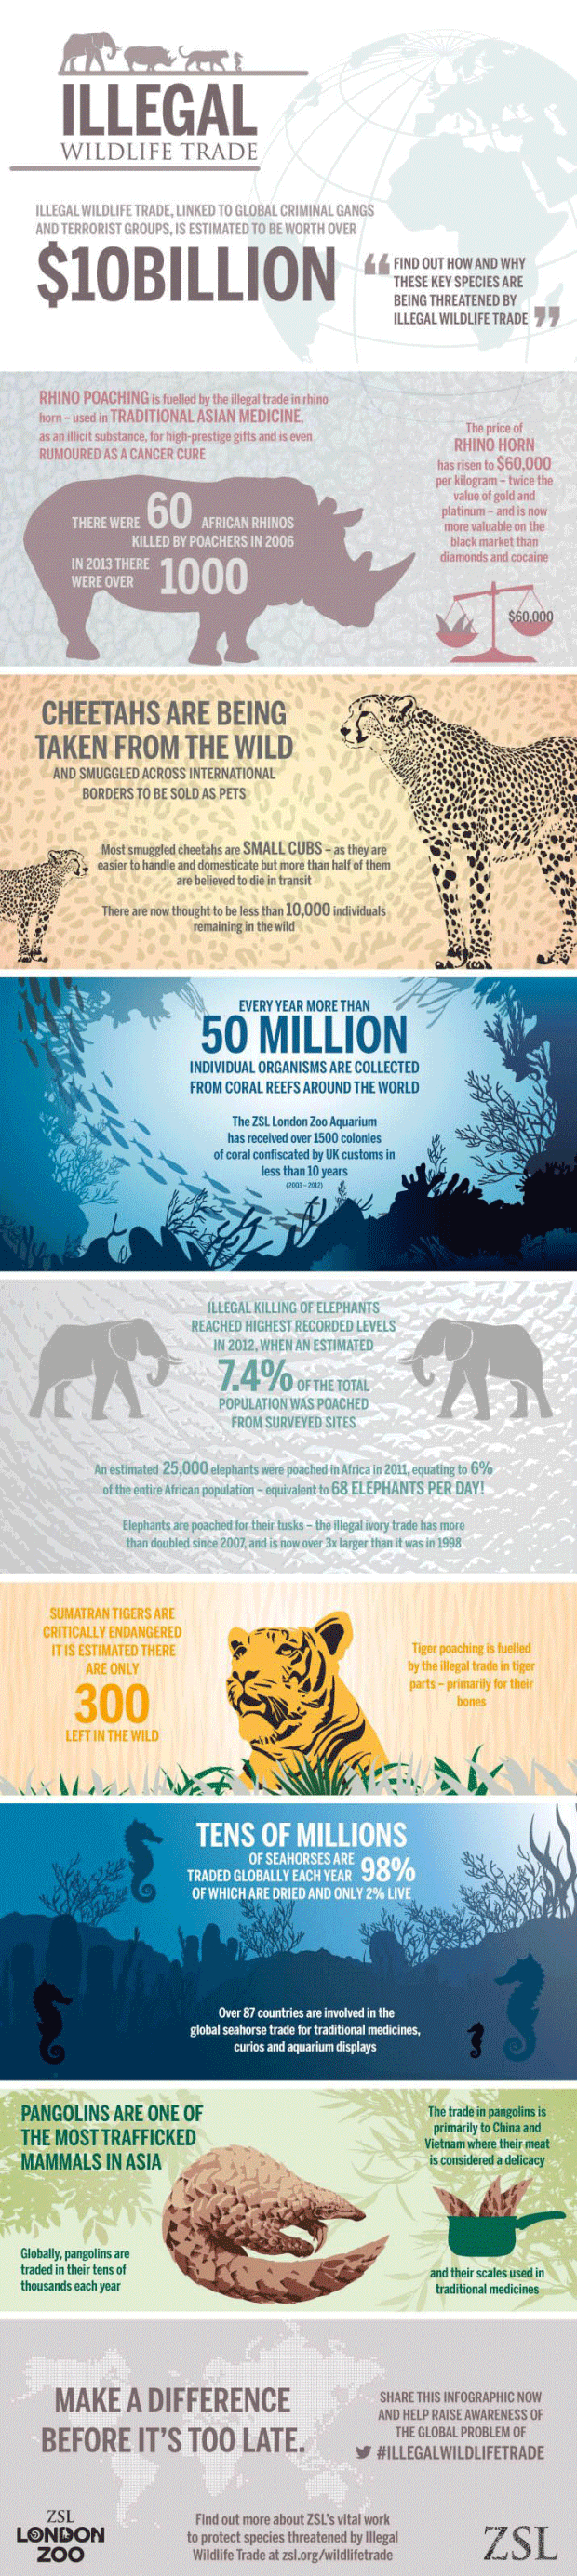 Infographic Illegale handel van wilde dieren 